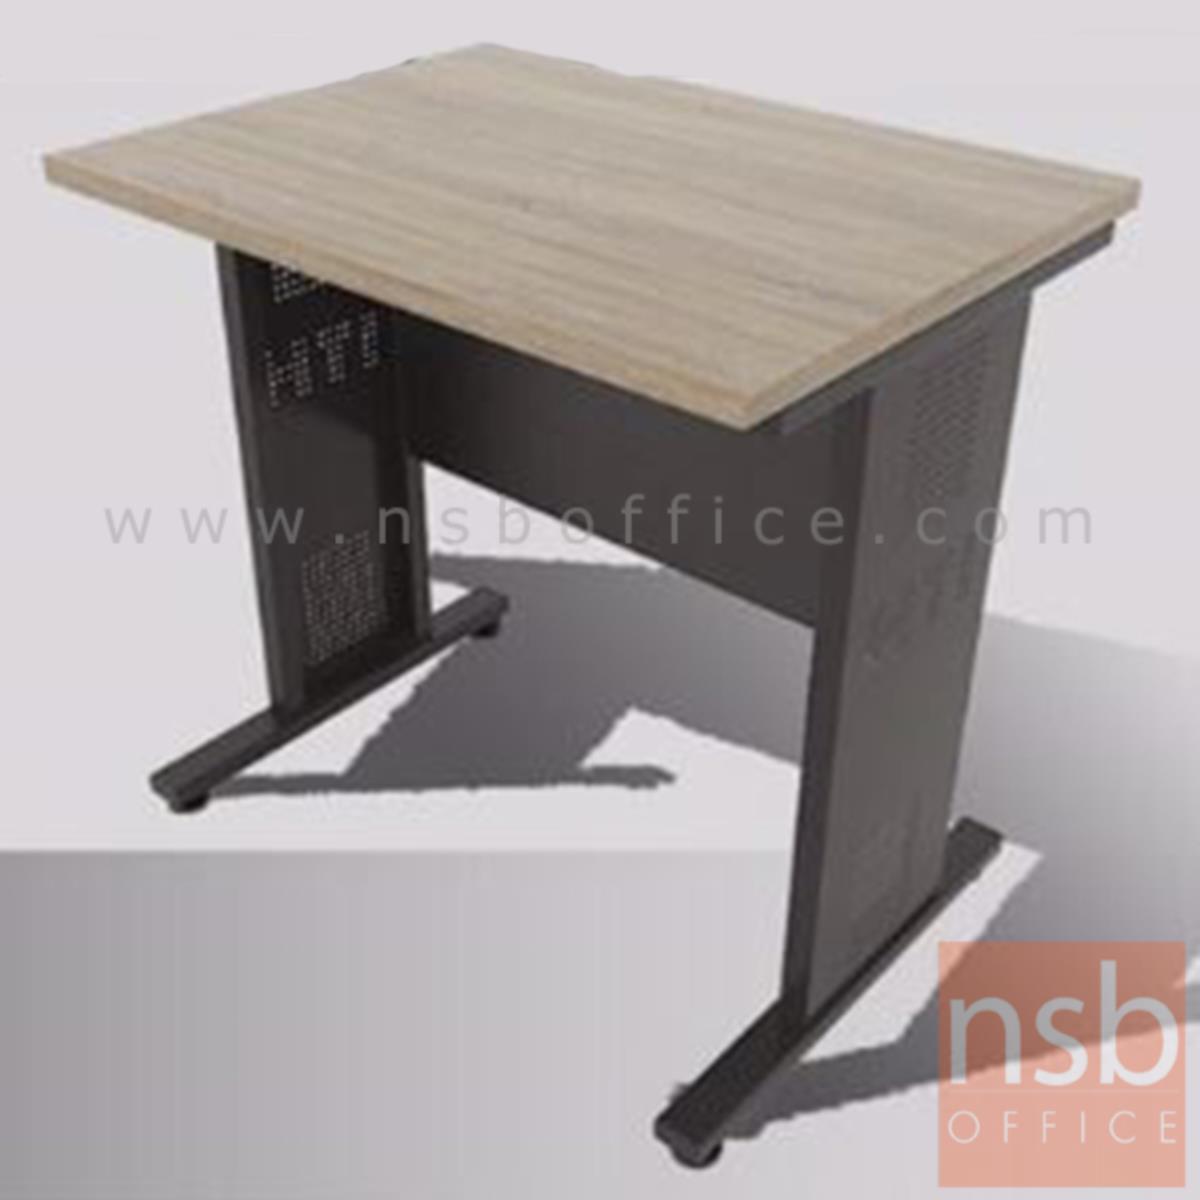 โต๊ะทำงาน  รุ่น Carrow (แคร์โรว์) ขนาด 80W cm. ขาเหล็ก 